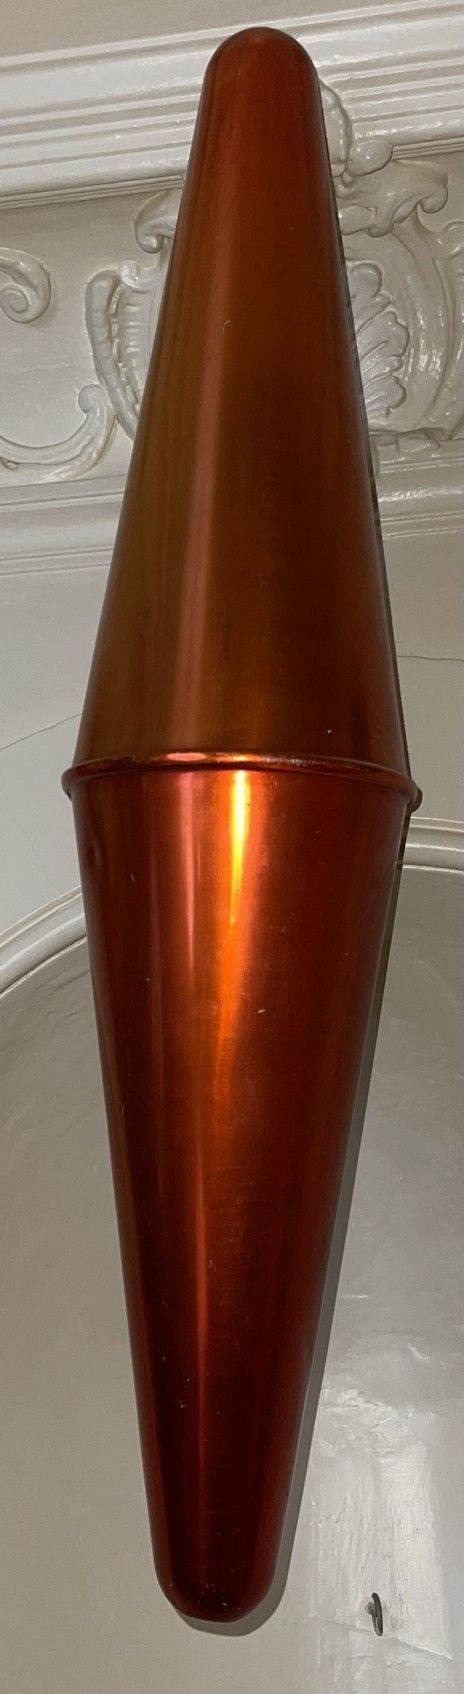 Null Zanahoria de tabaco en chapa pintada

Moderno

H.: 79 cm (choques)